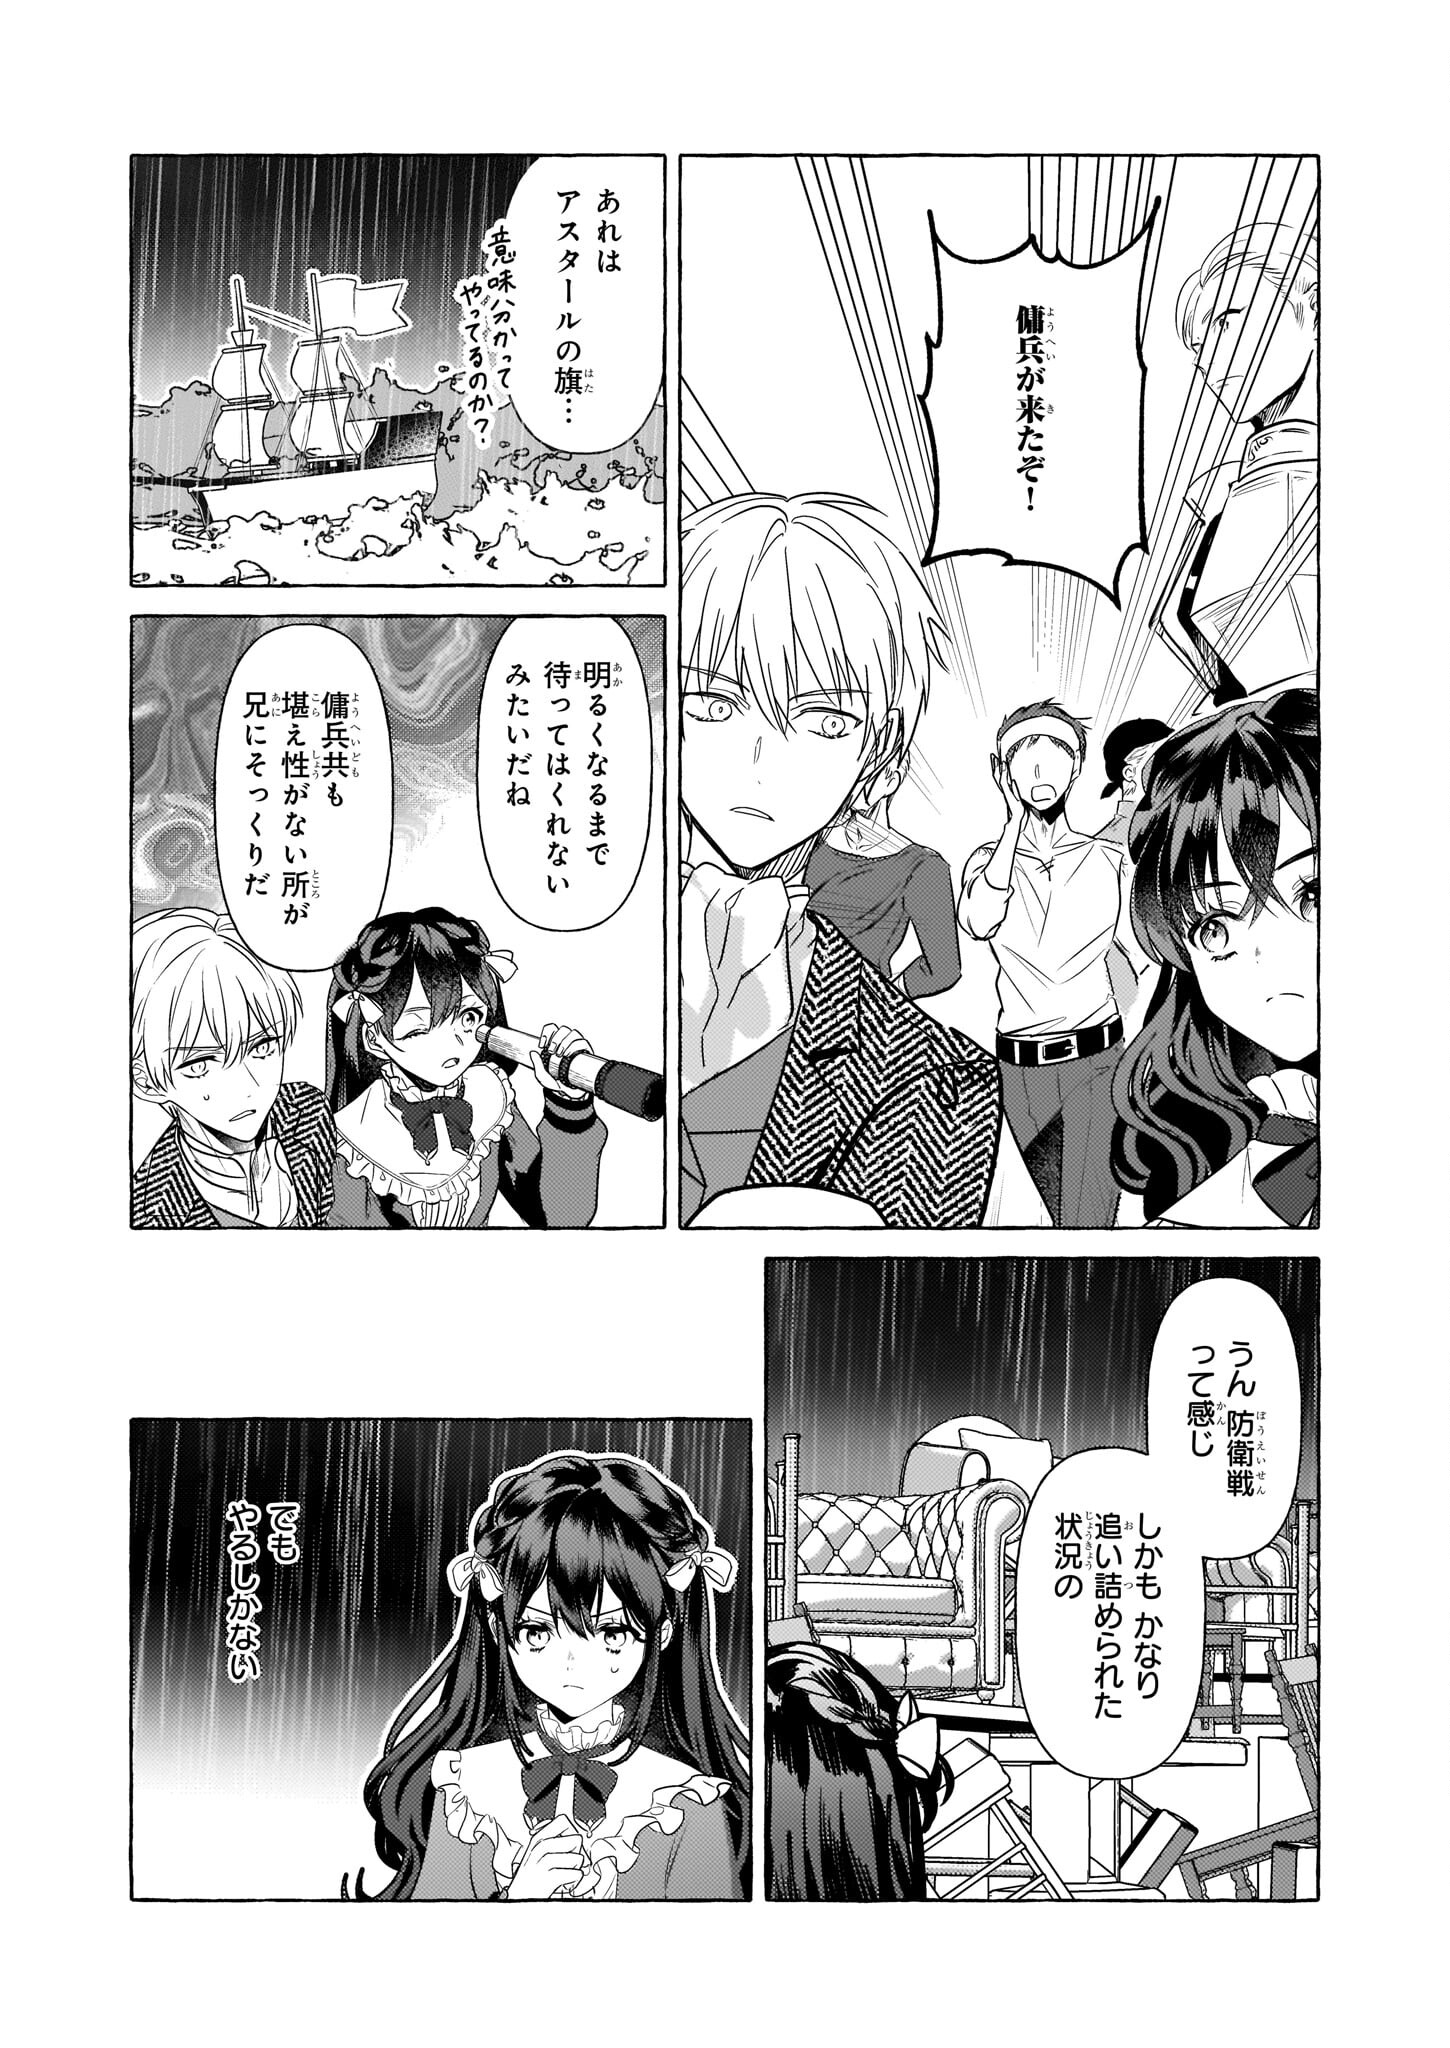 Tenseisaki ga Shoujo Manga no Shirobuta Reijou datta reBoooot! - Chapter 21 - Page 23